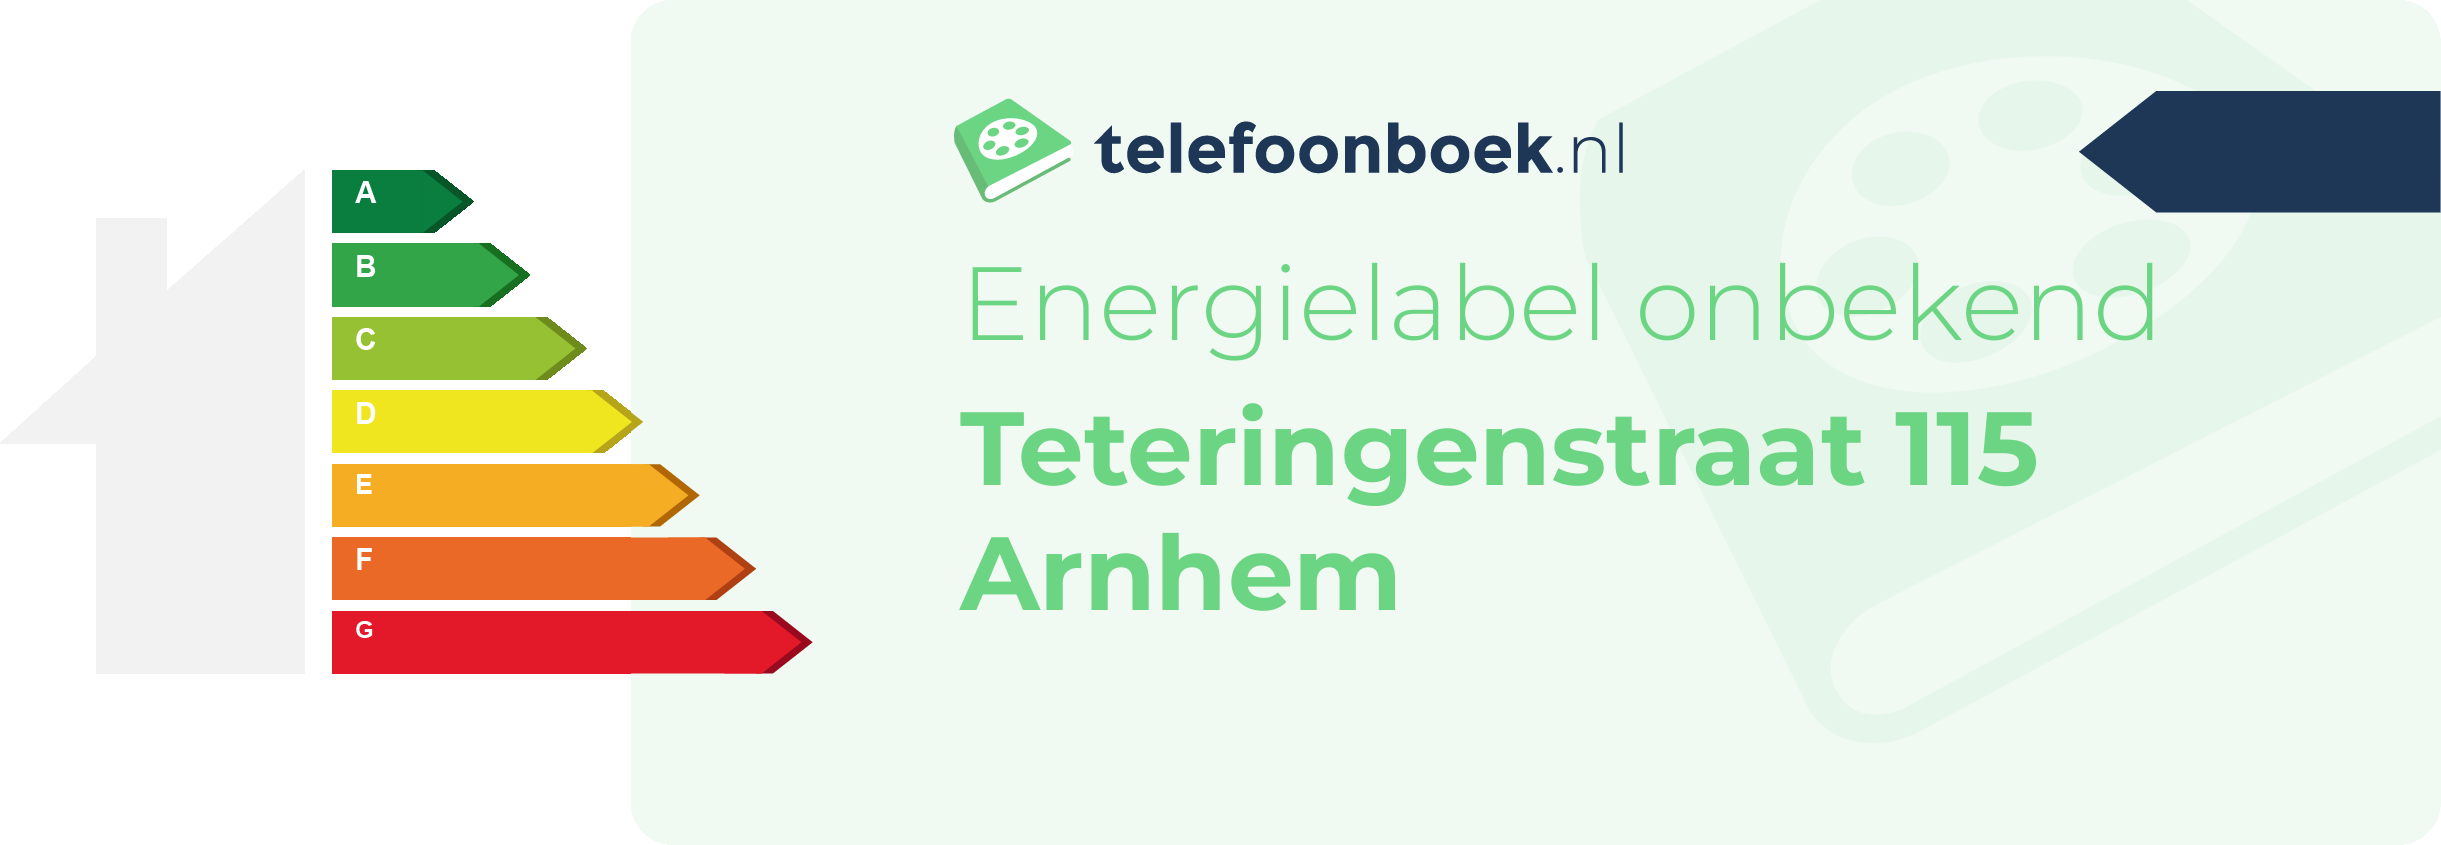 Energielabel Teteringenstraat 115 Arnhem